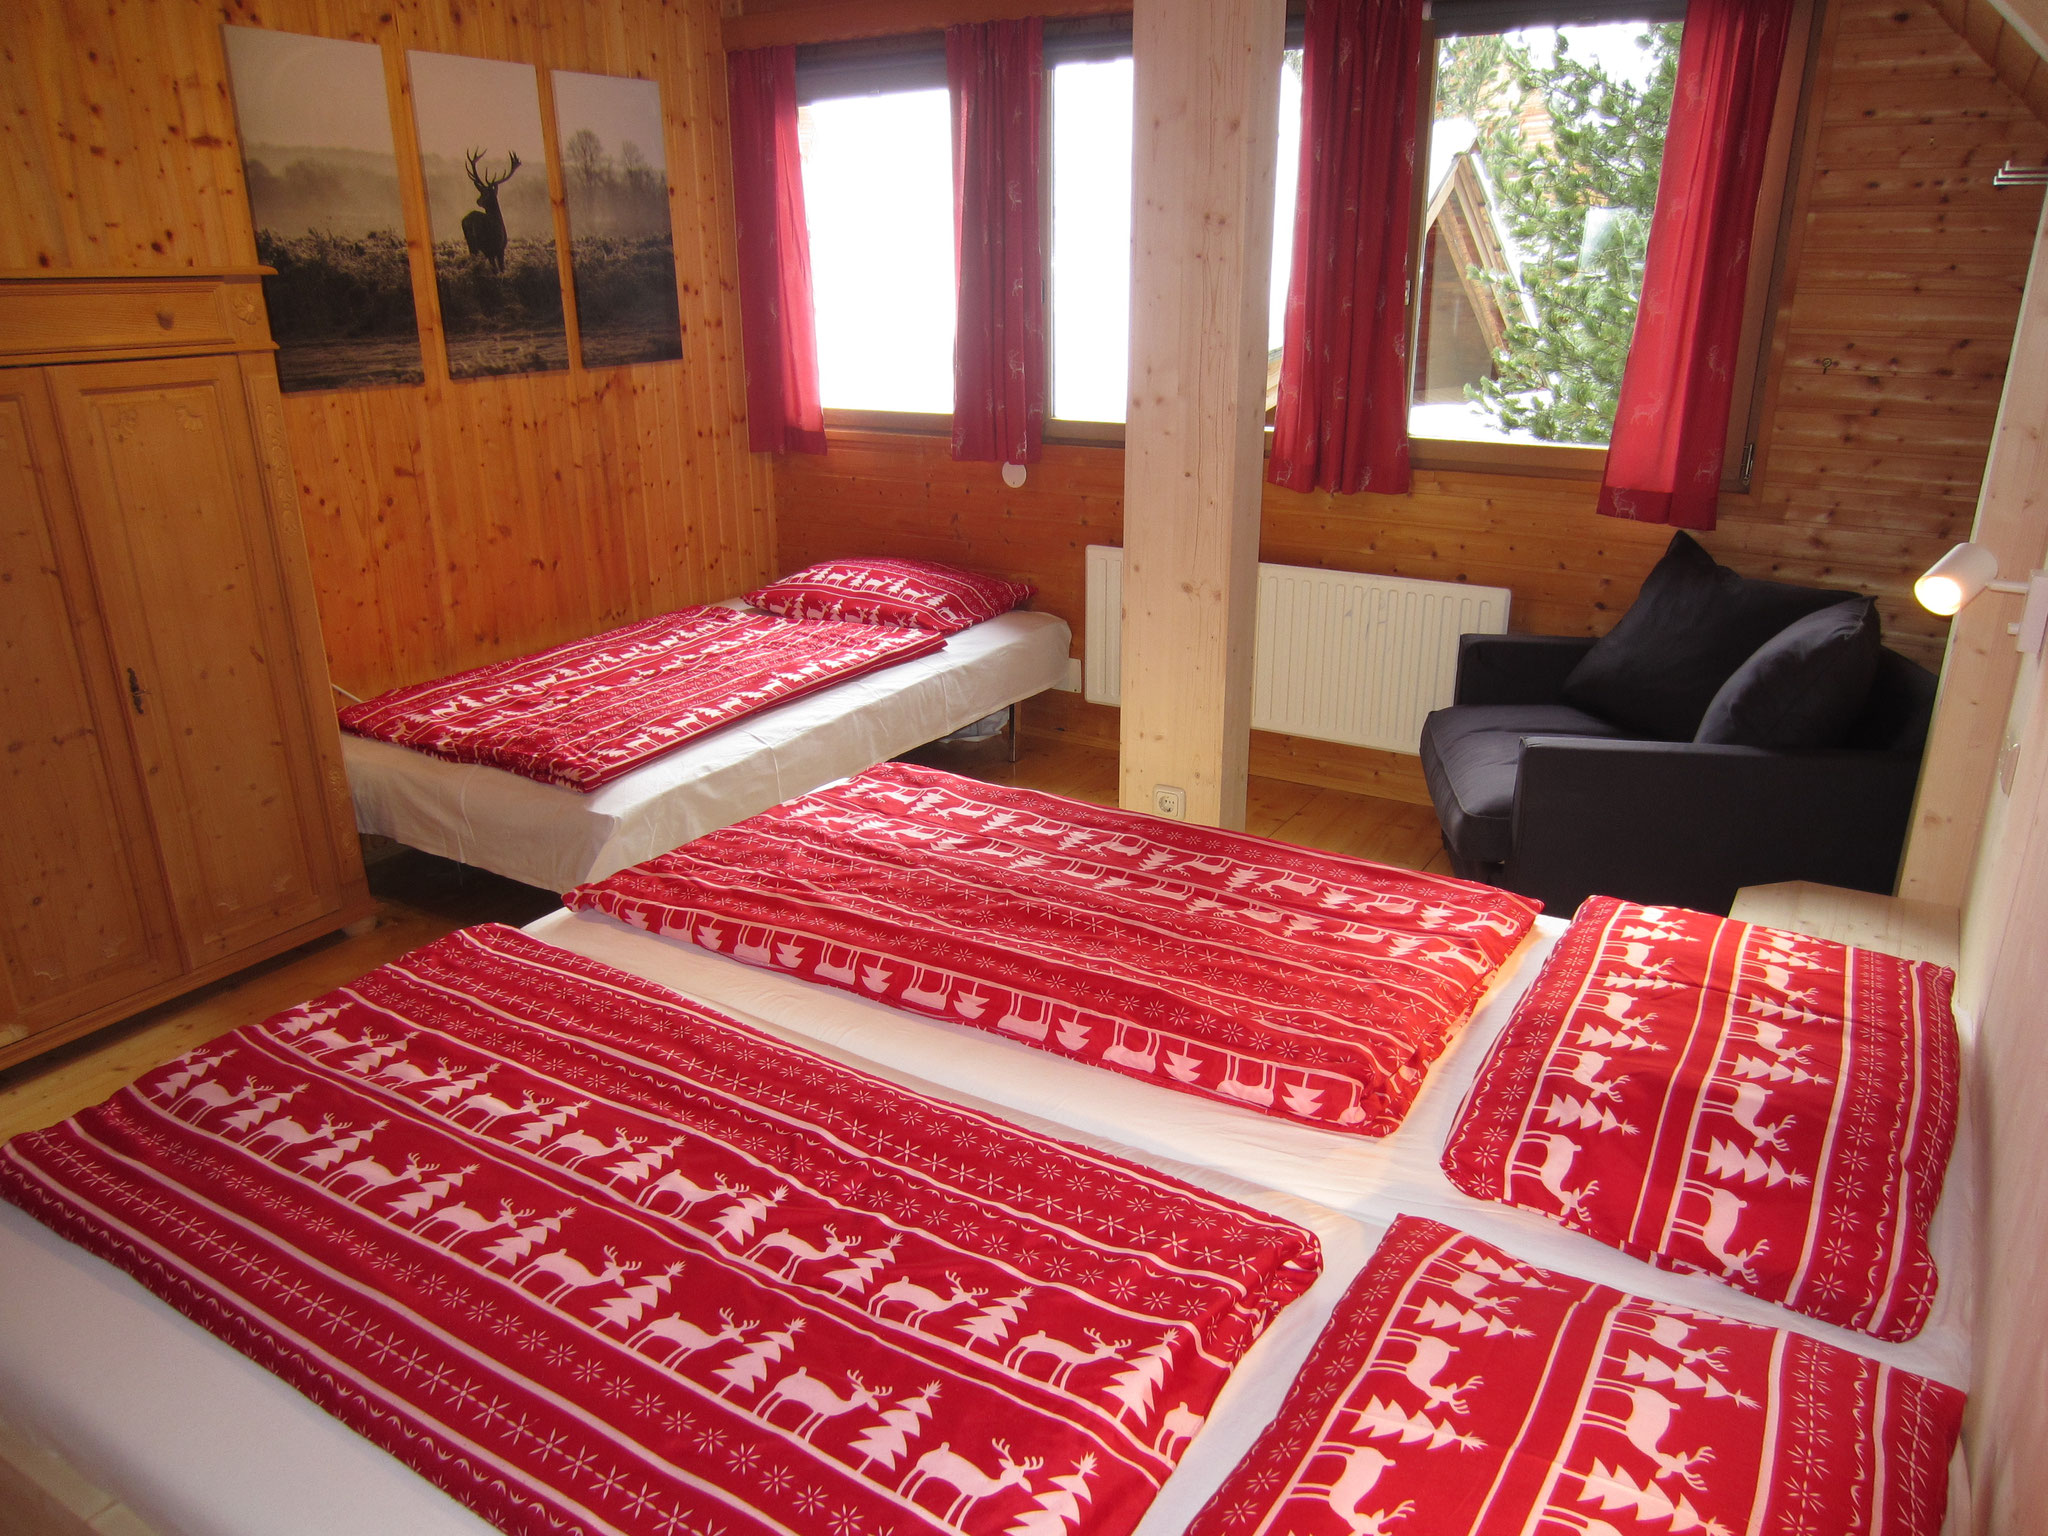 Zirbenwald Lodge - Schlafzimmer "Fichte" mit großem Zustellbett